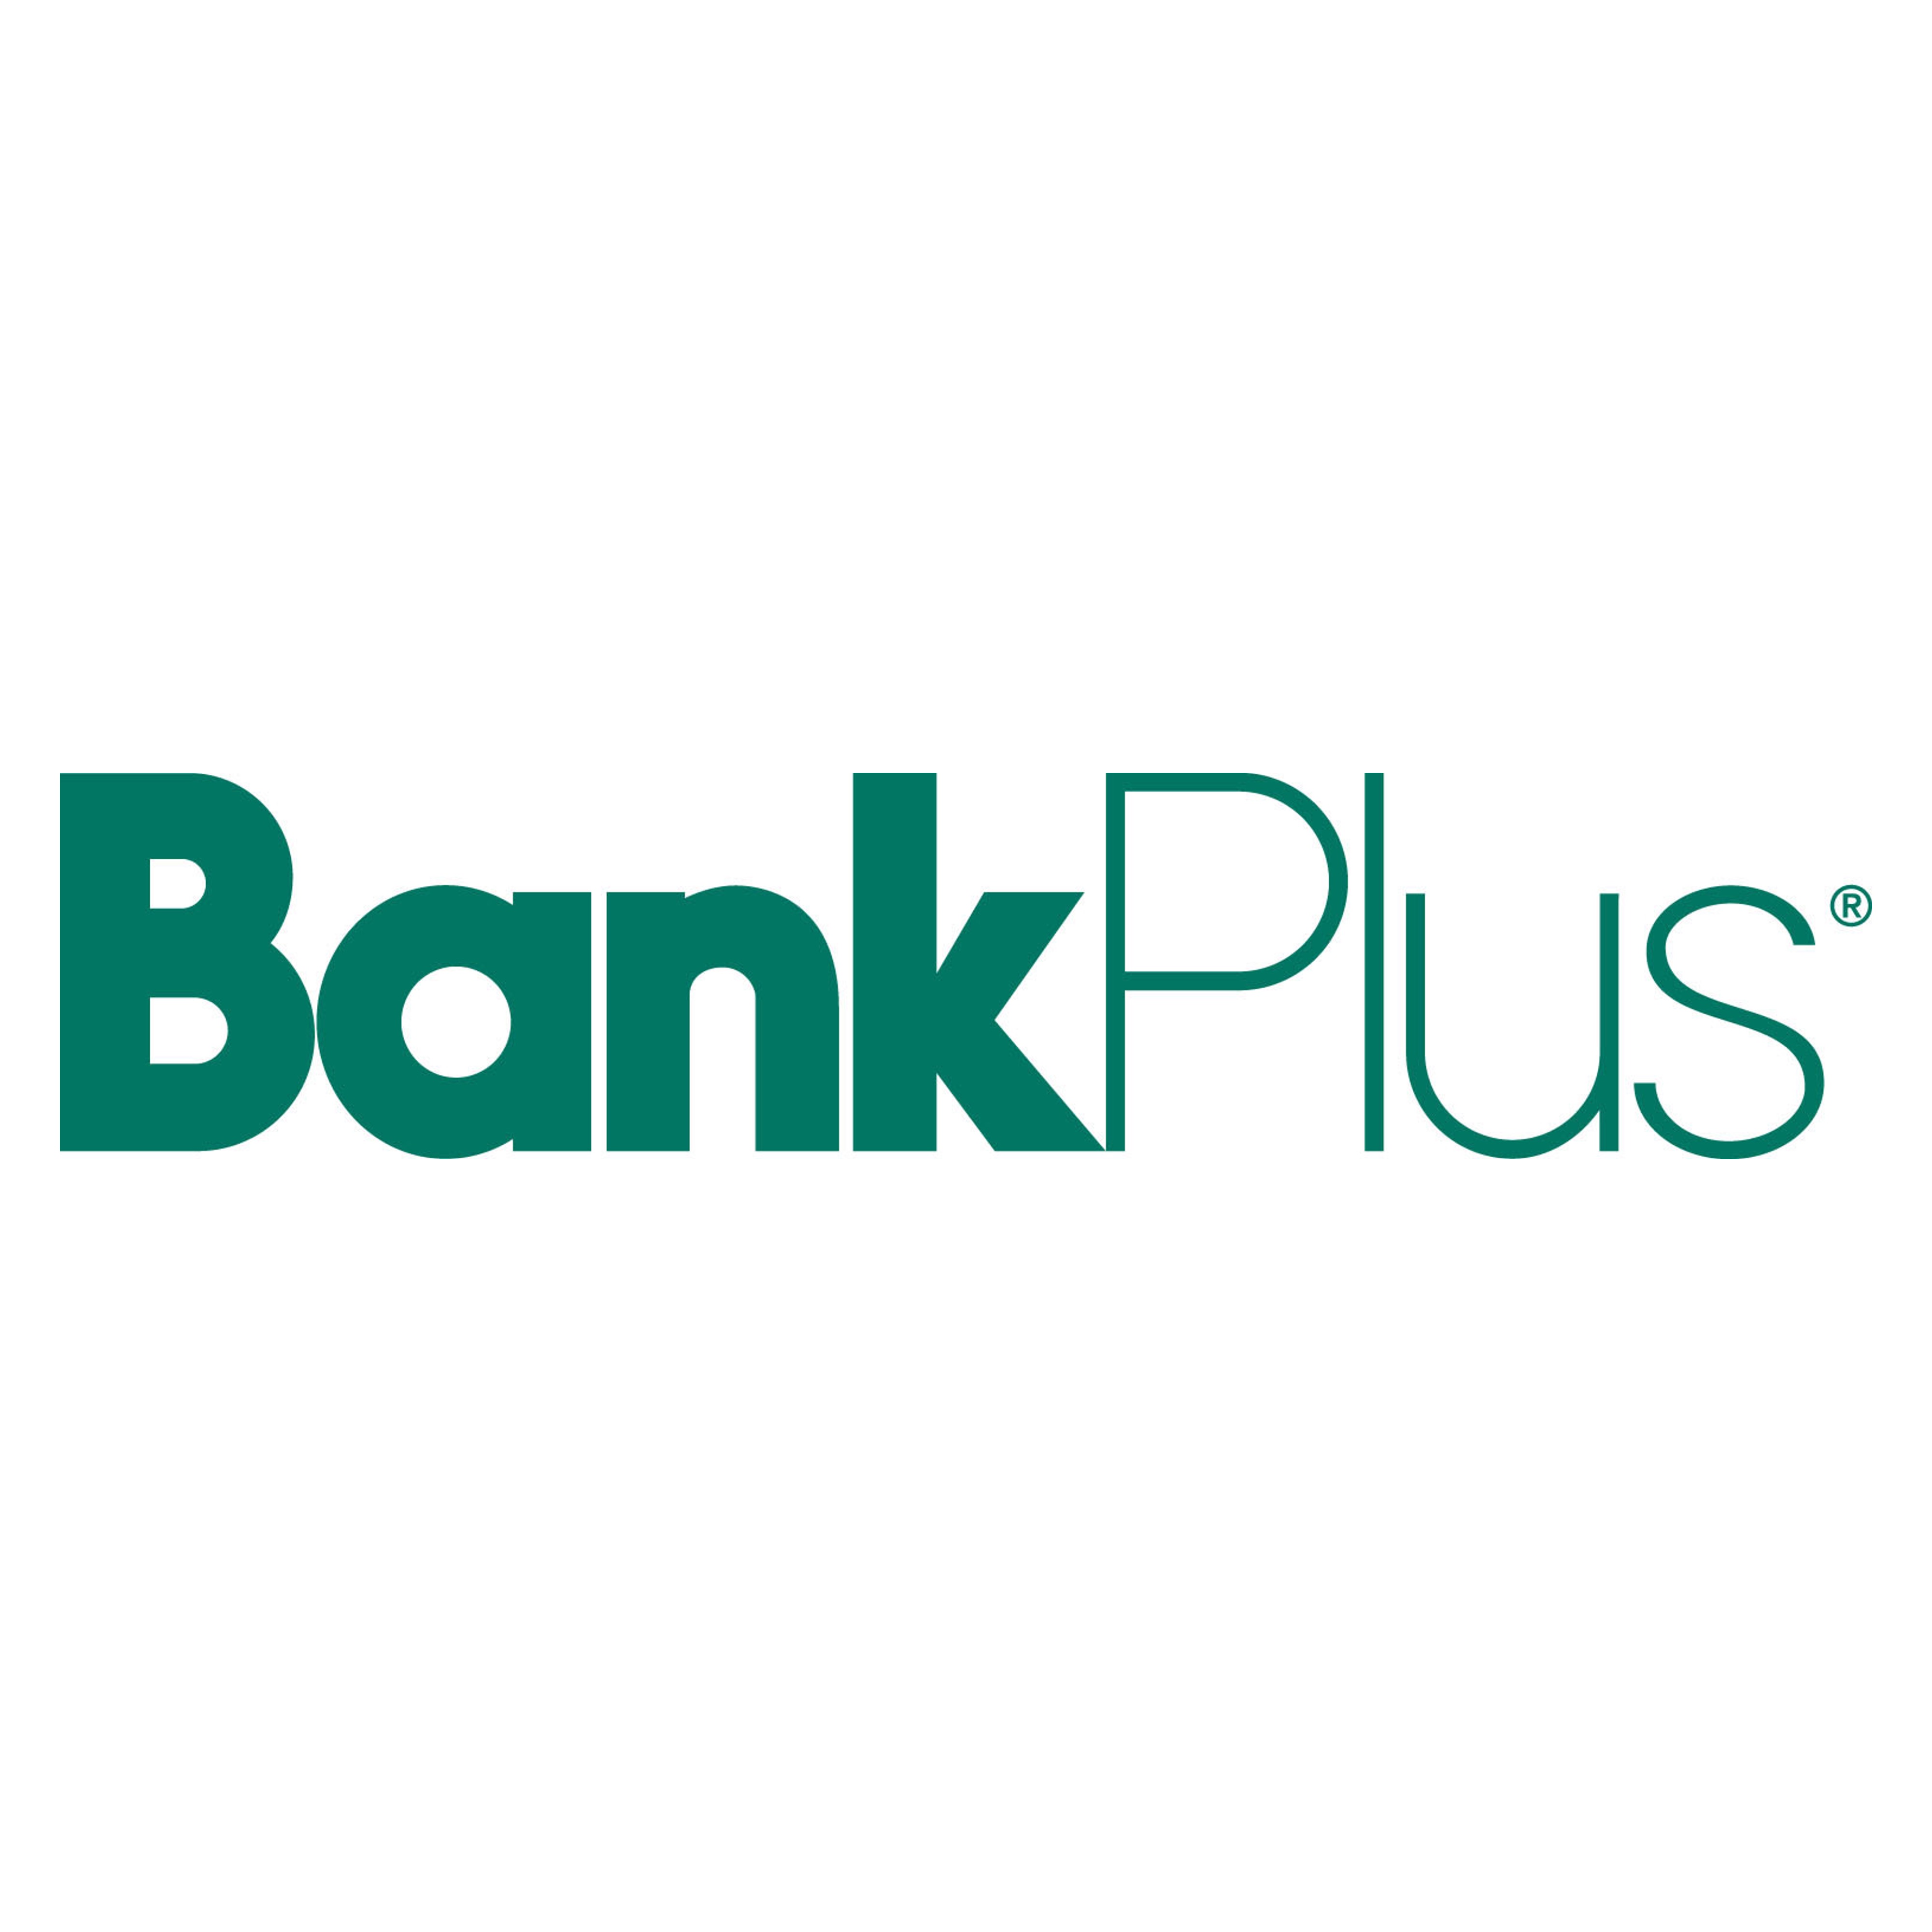 Bank Plus logo